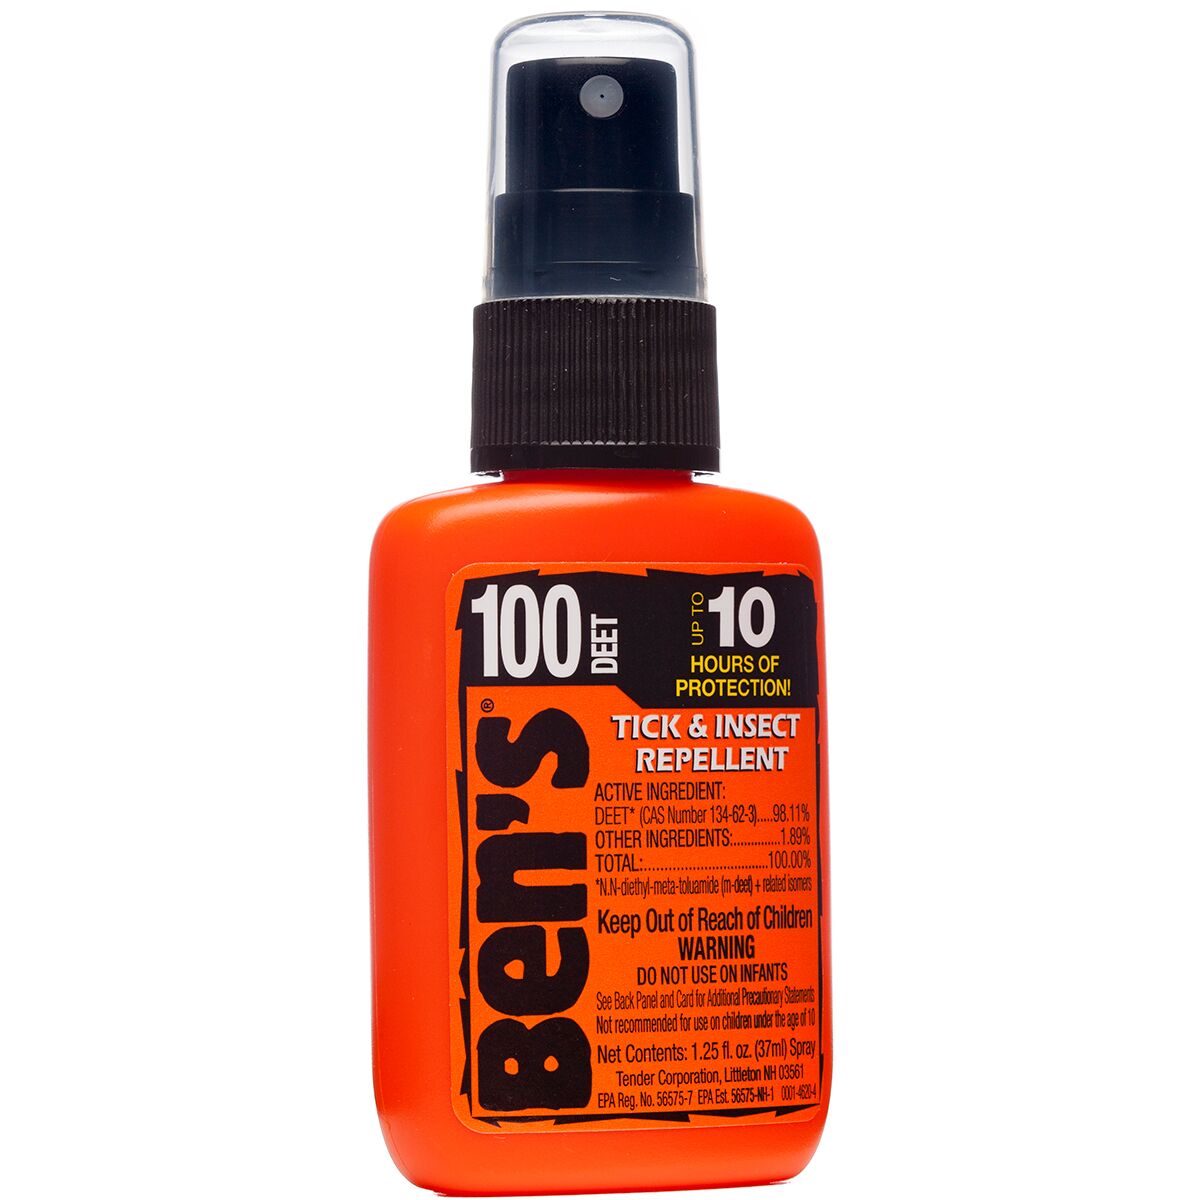 Ben's 100 Max Deet Tick & Insect Repellent